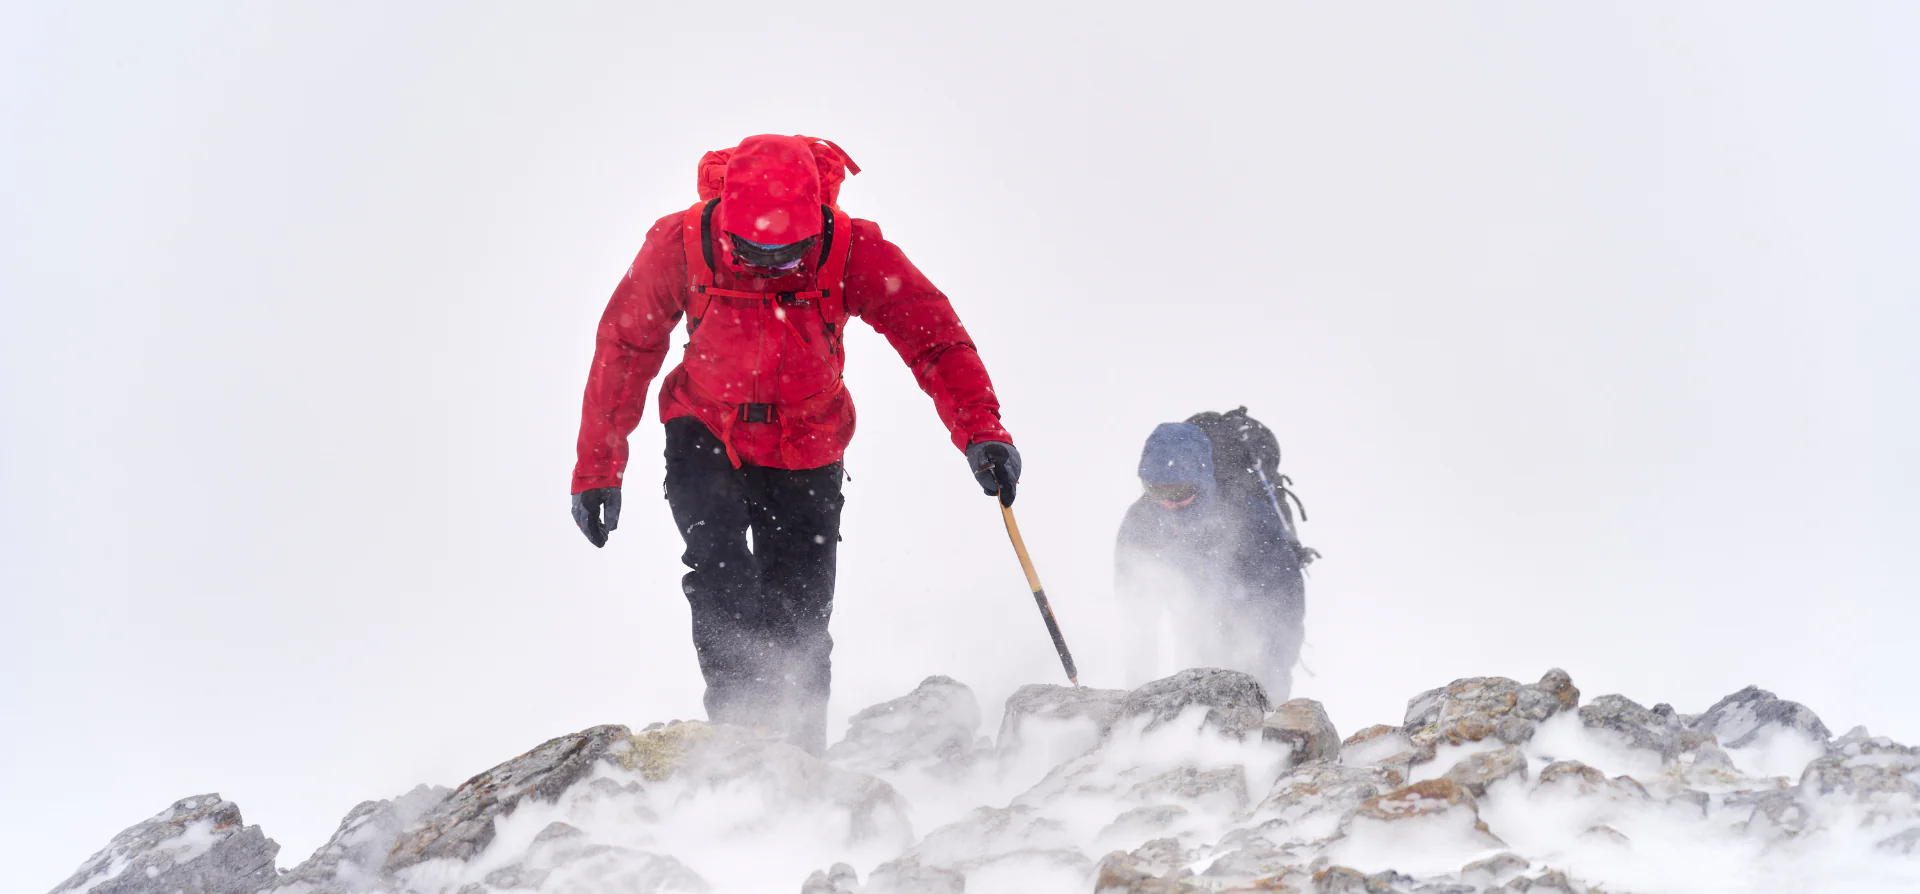 وسایل مورد نیاز برای کوهنوردی در زمستان